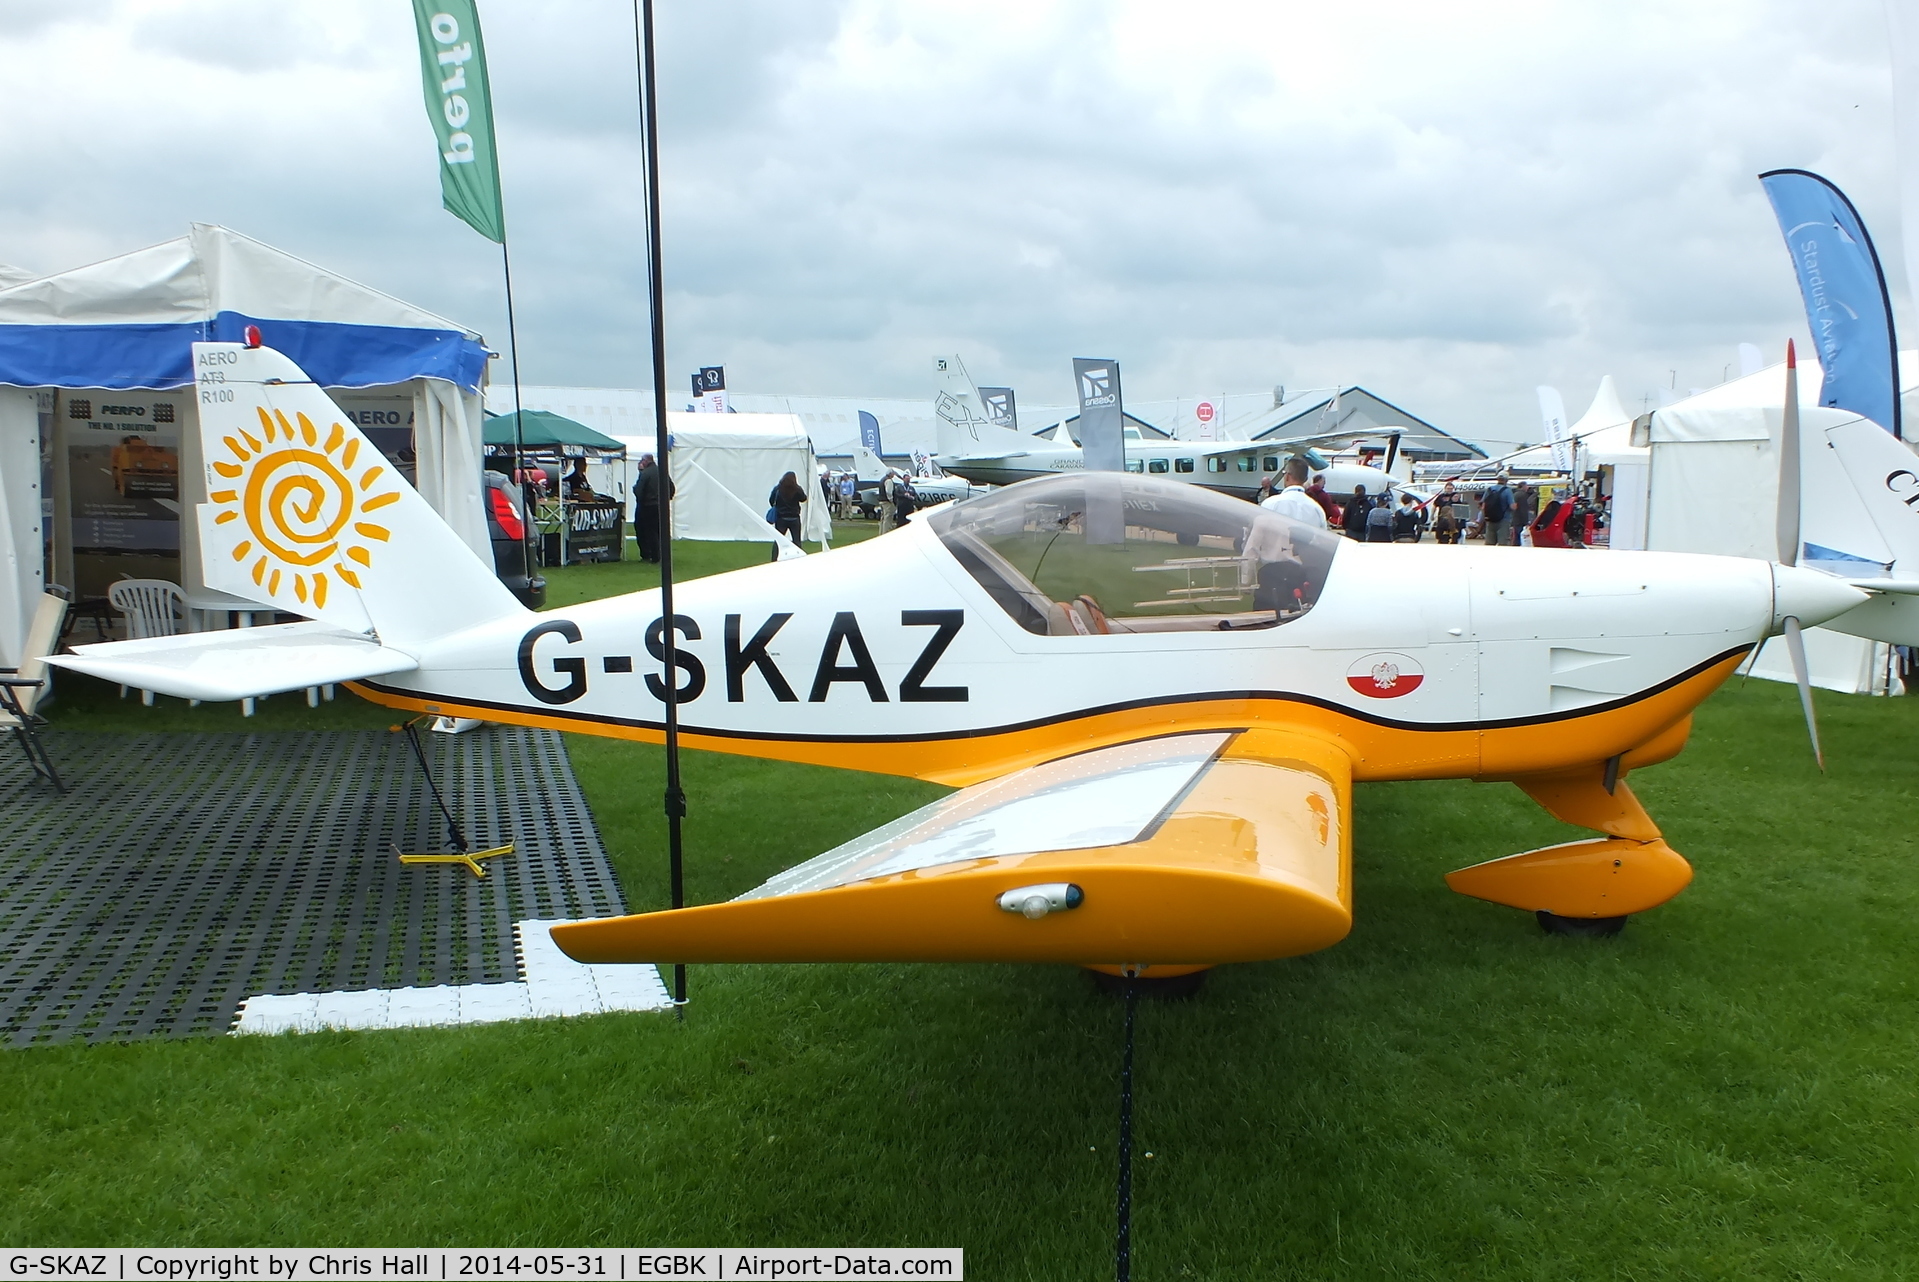 G-SKAZ, 2010 Aero AT-3 R100 C/N AT3-055, at AeroExpo 2014